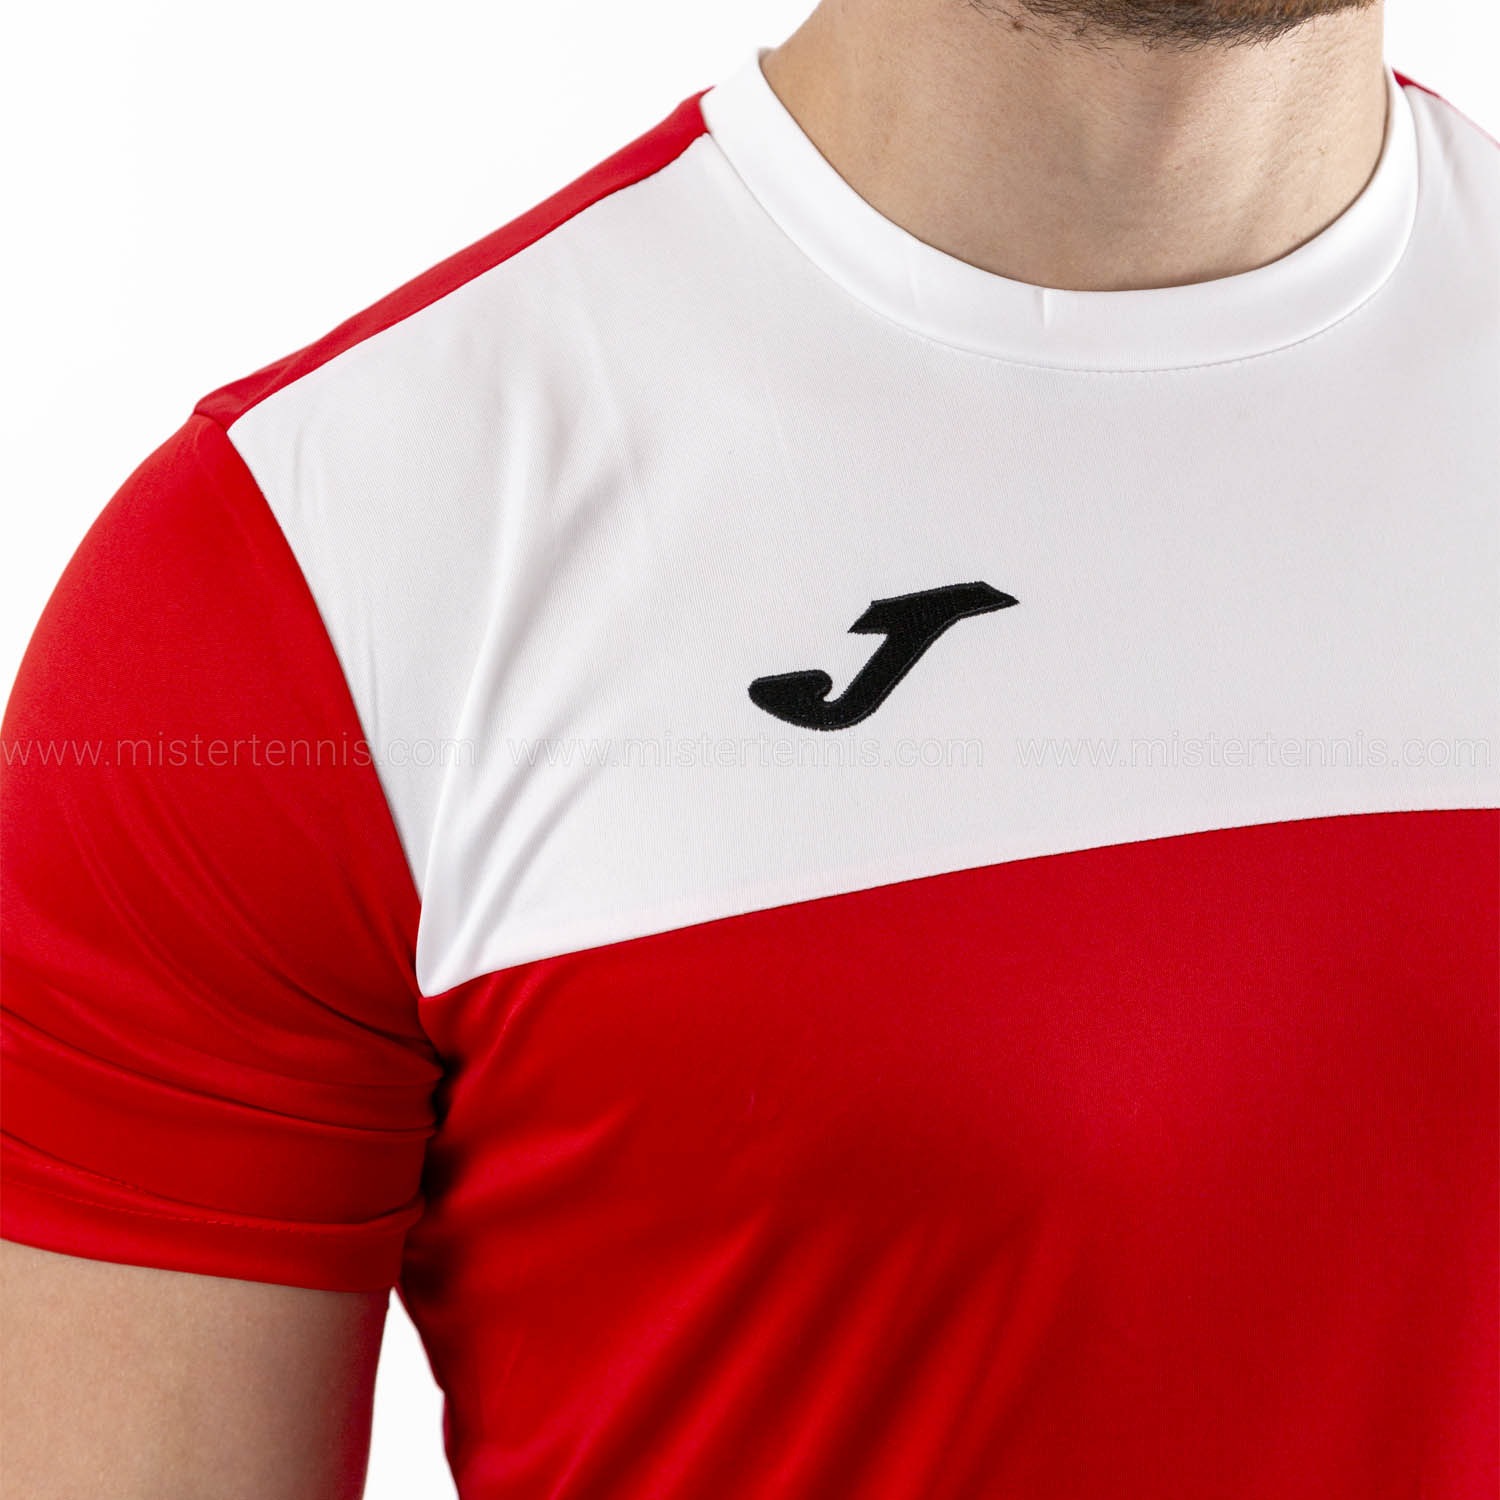 Joma Winner Camiseta - Red/White